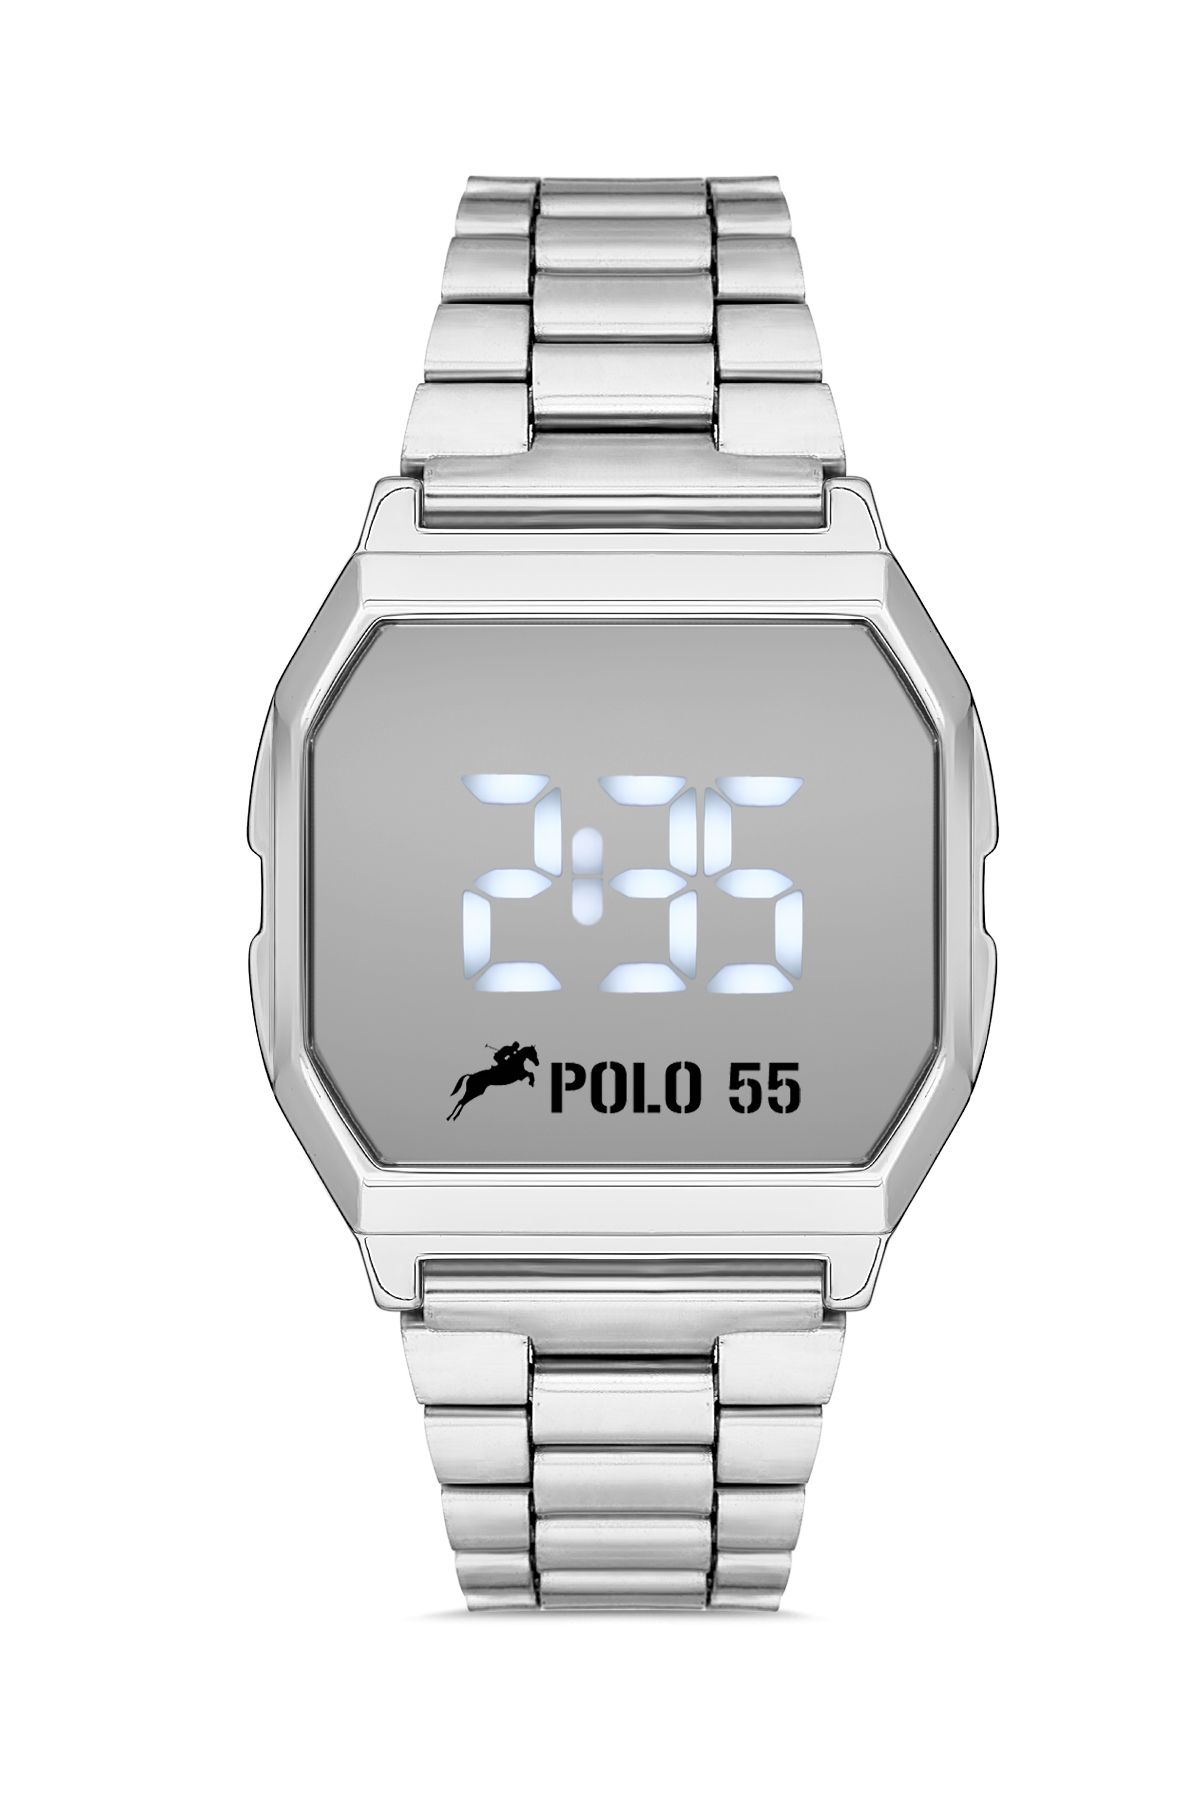 Polo55 Gümüş Zamansız Tasarım Dokunmatik Dijital Metal Kordon Retro Kadın Kol Saati